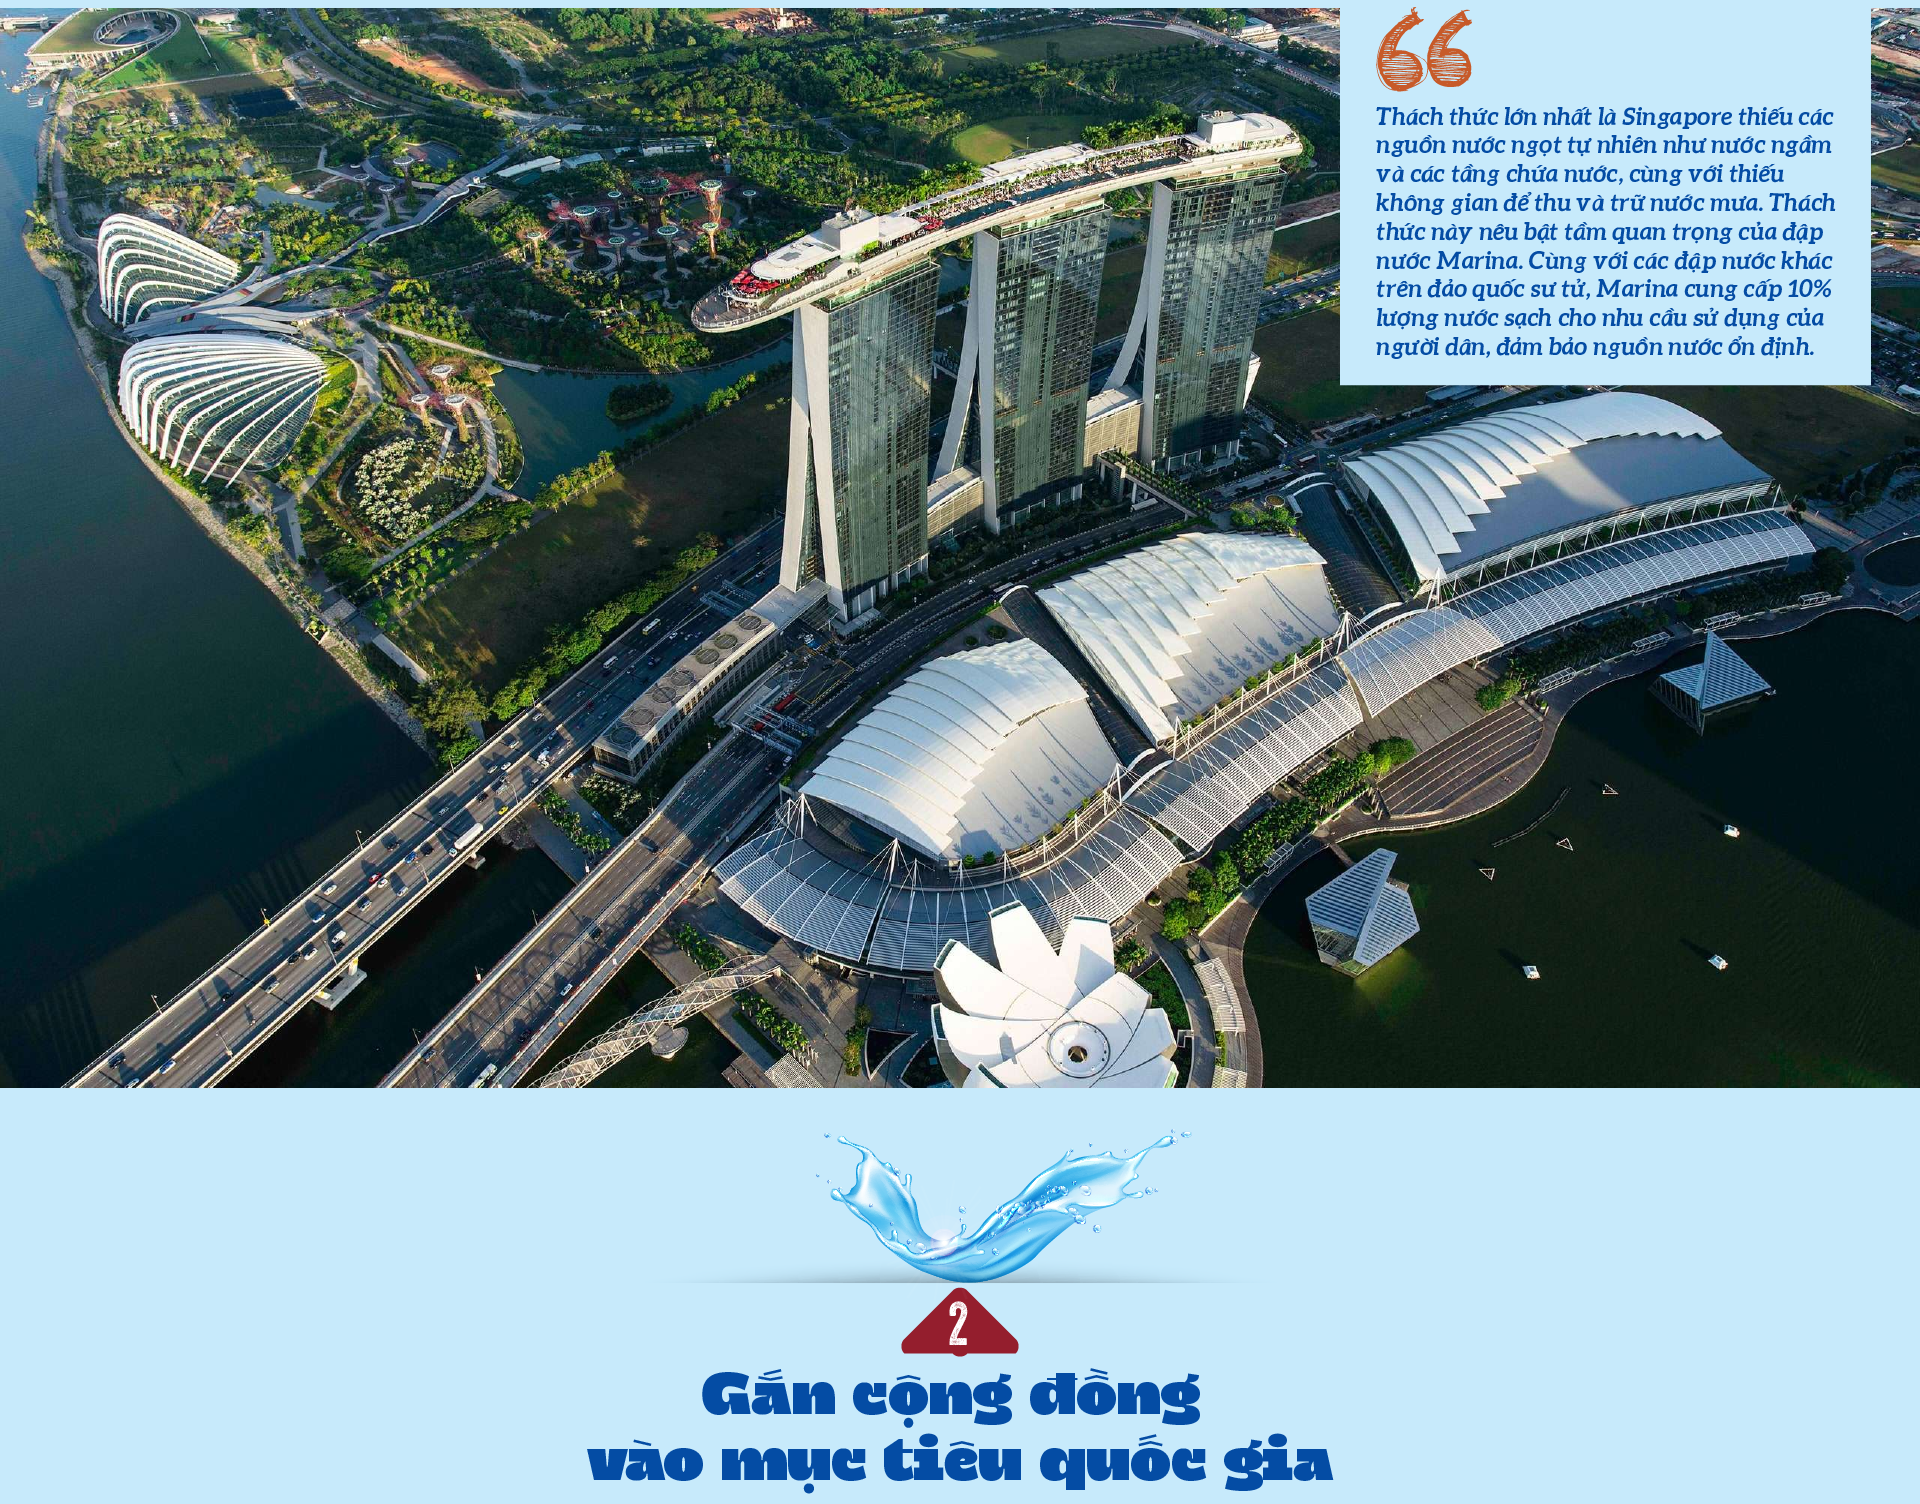 Hành trình bảo tồn nguồn nước không ngừng nghỉ của Singapore - Ảnh 4